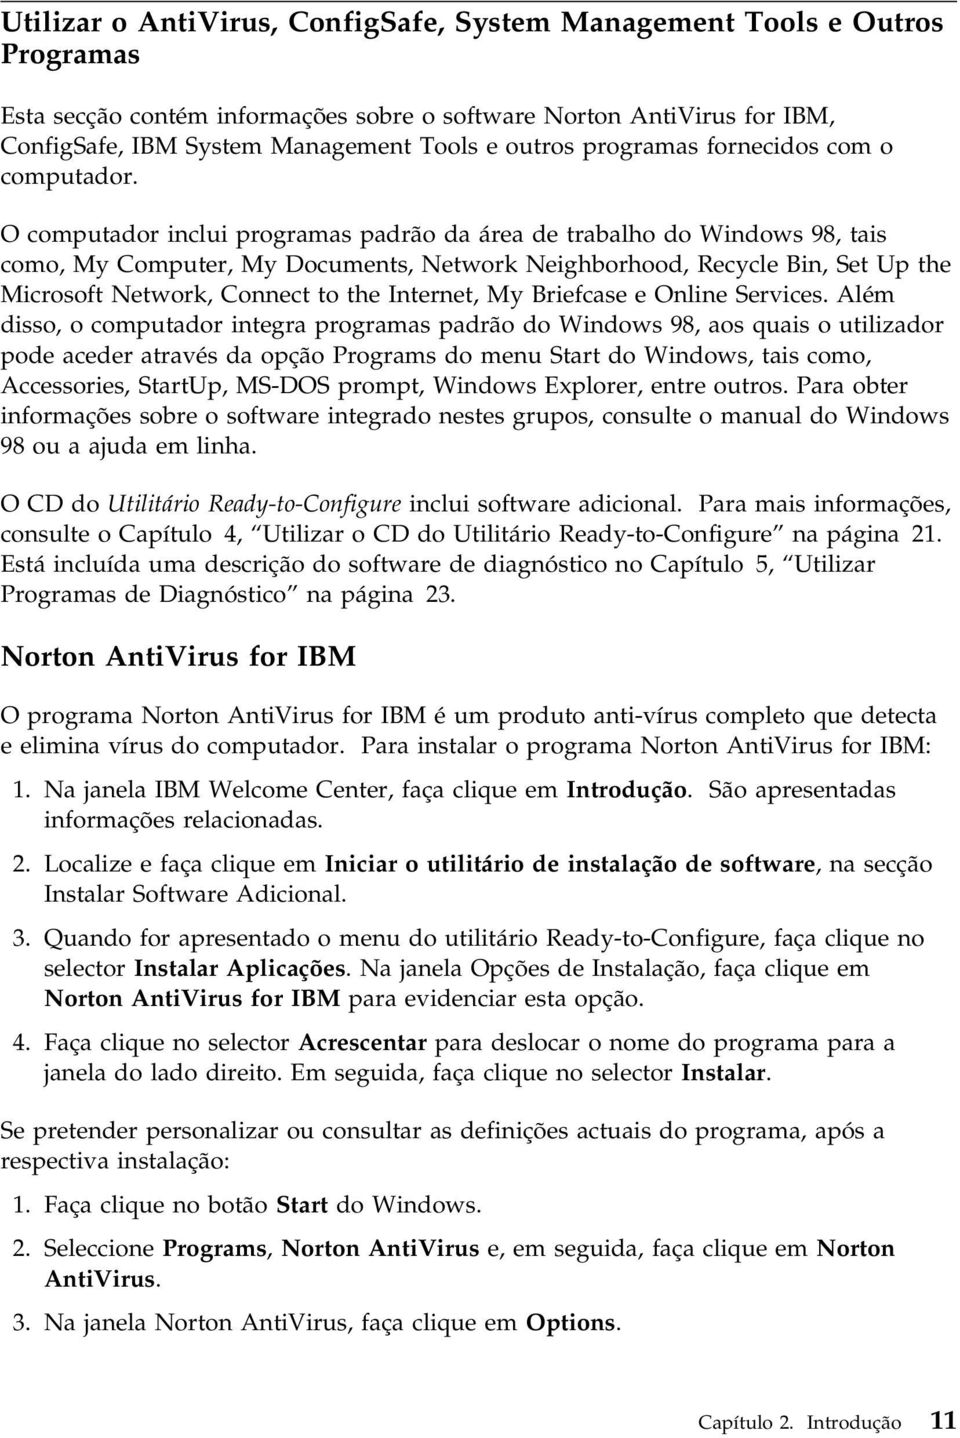 O computador inclui programas padrão da área de trabalho do Windows 98, tais como, My Computer, My Documents, Network Neighborhood, Recycle Bin, Set Up the Microsoft Network, Connect to the Internet,